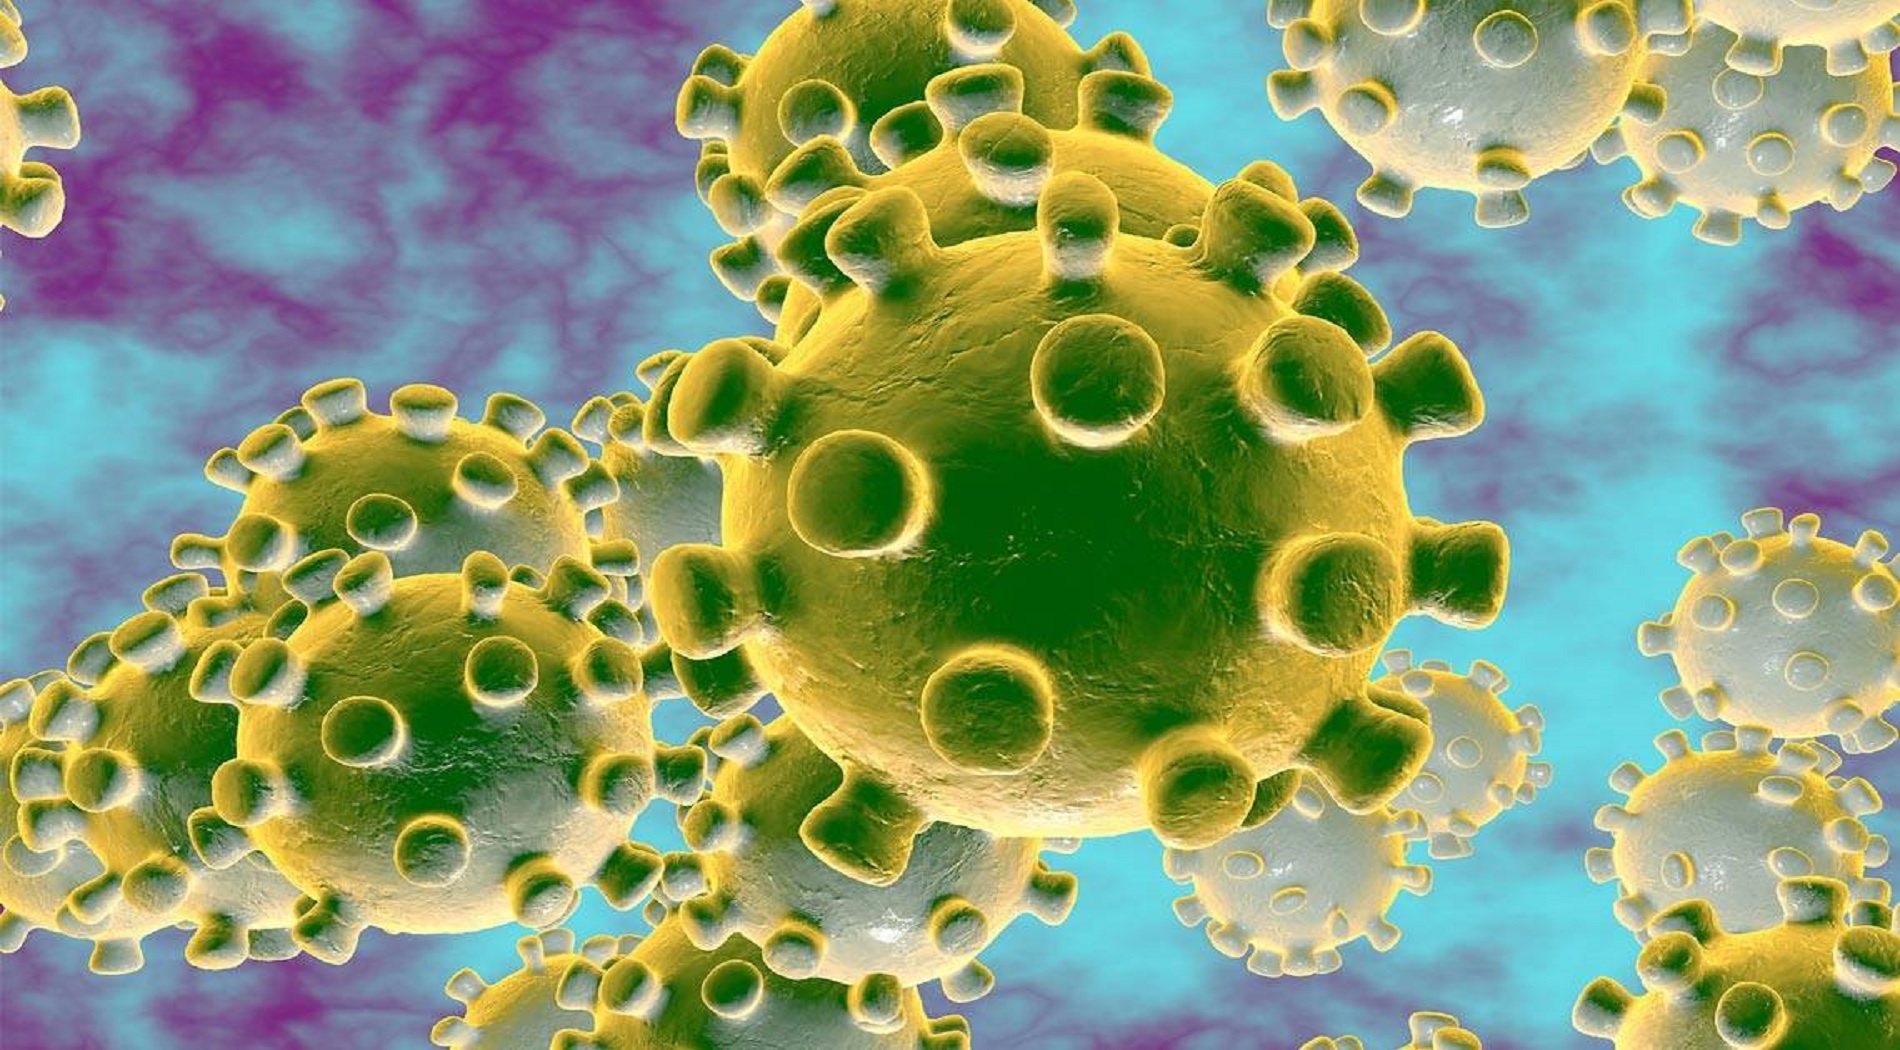 Γιατί ο Παγκόσμιος Οργανισμός Υγείας κήρυξε τον κοροναϊό COVID-19 πανδημία;